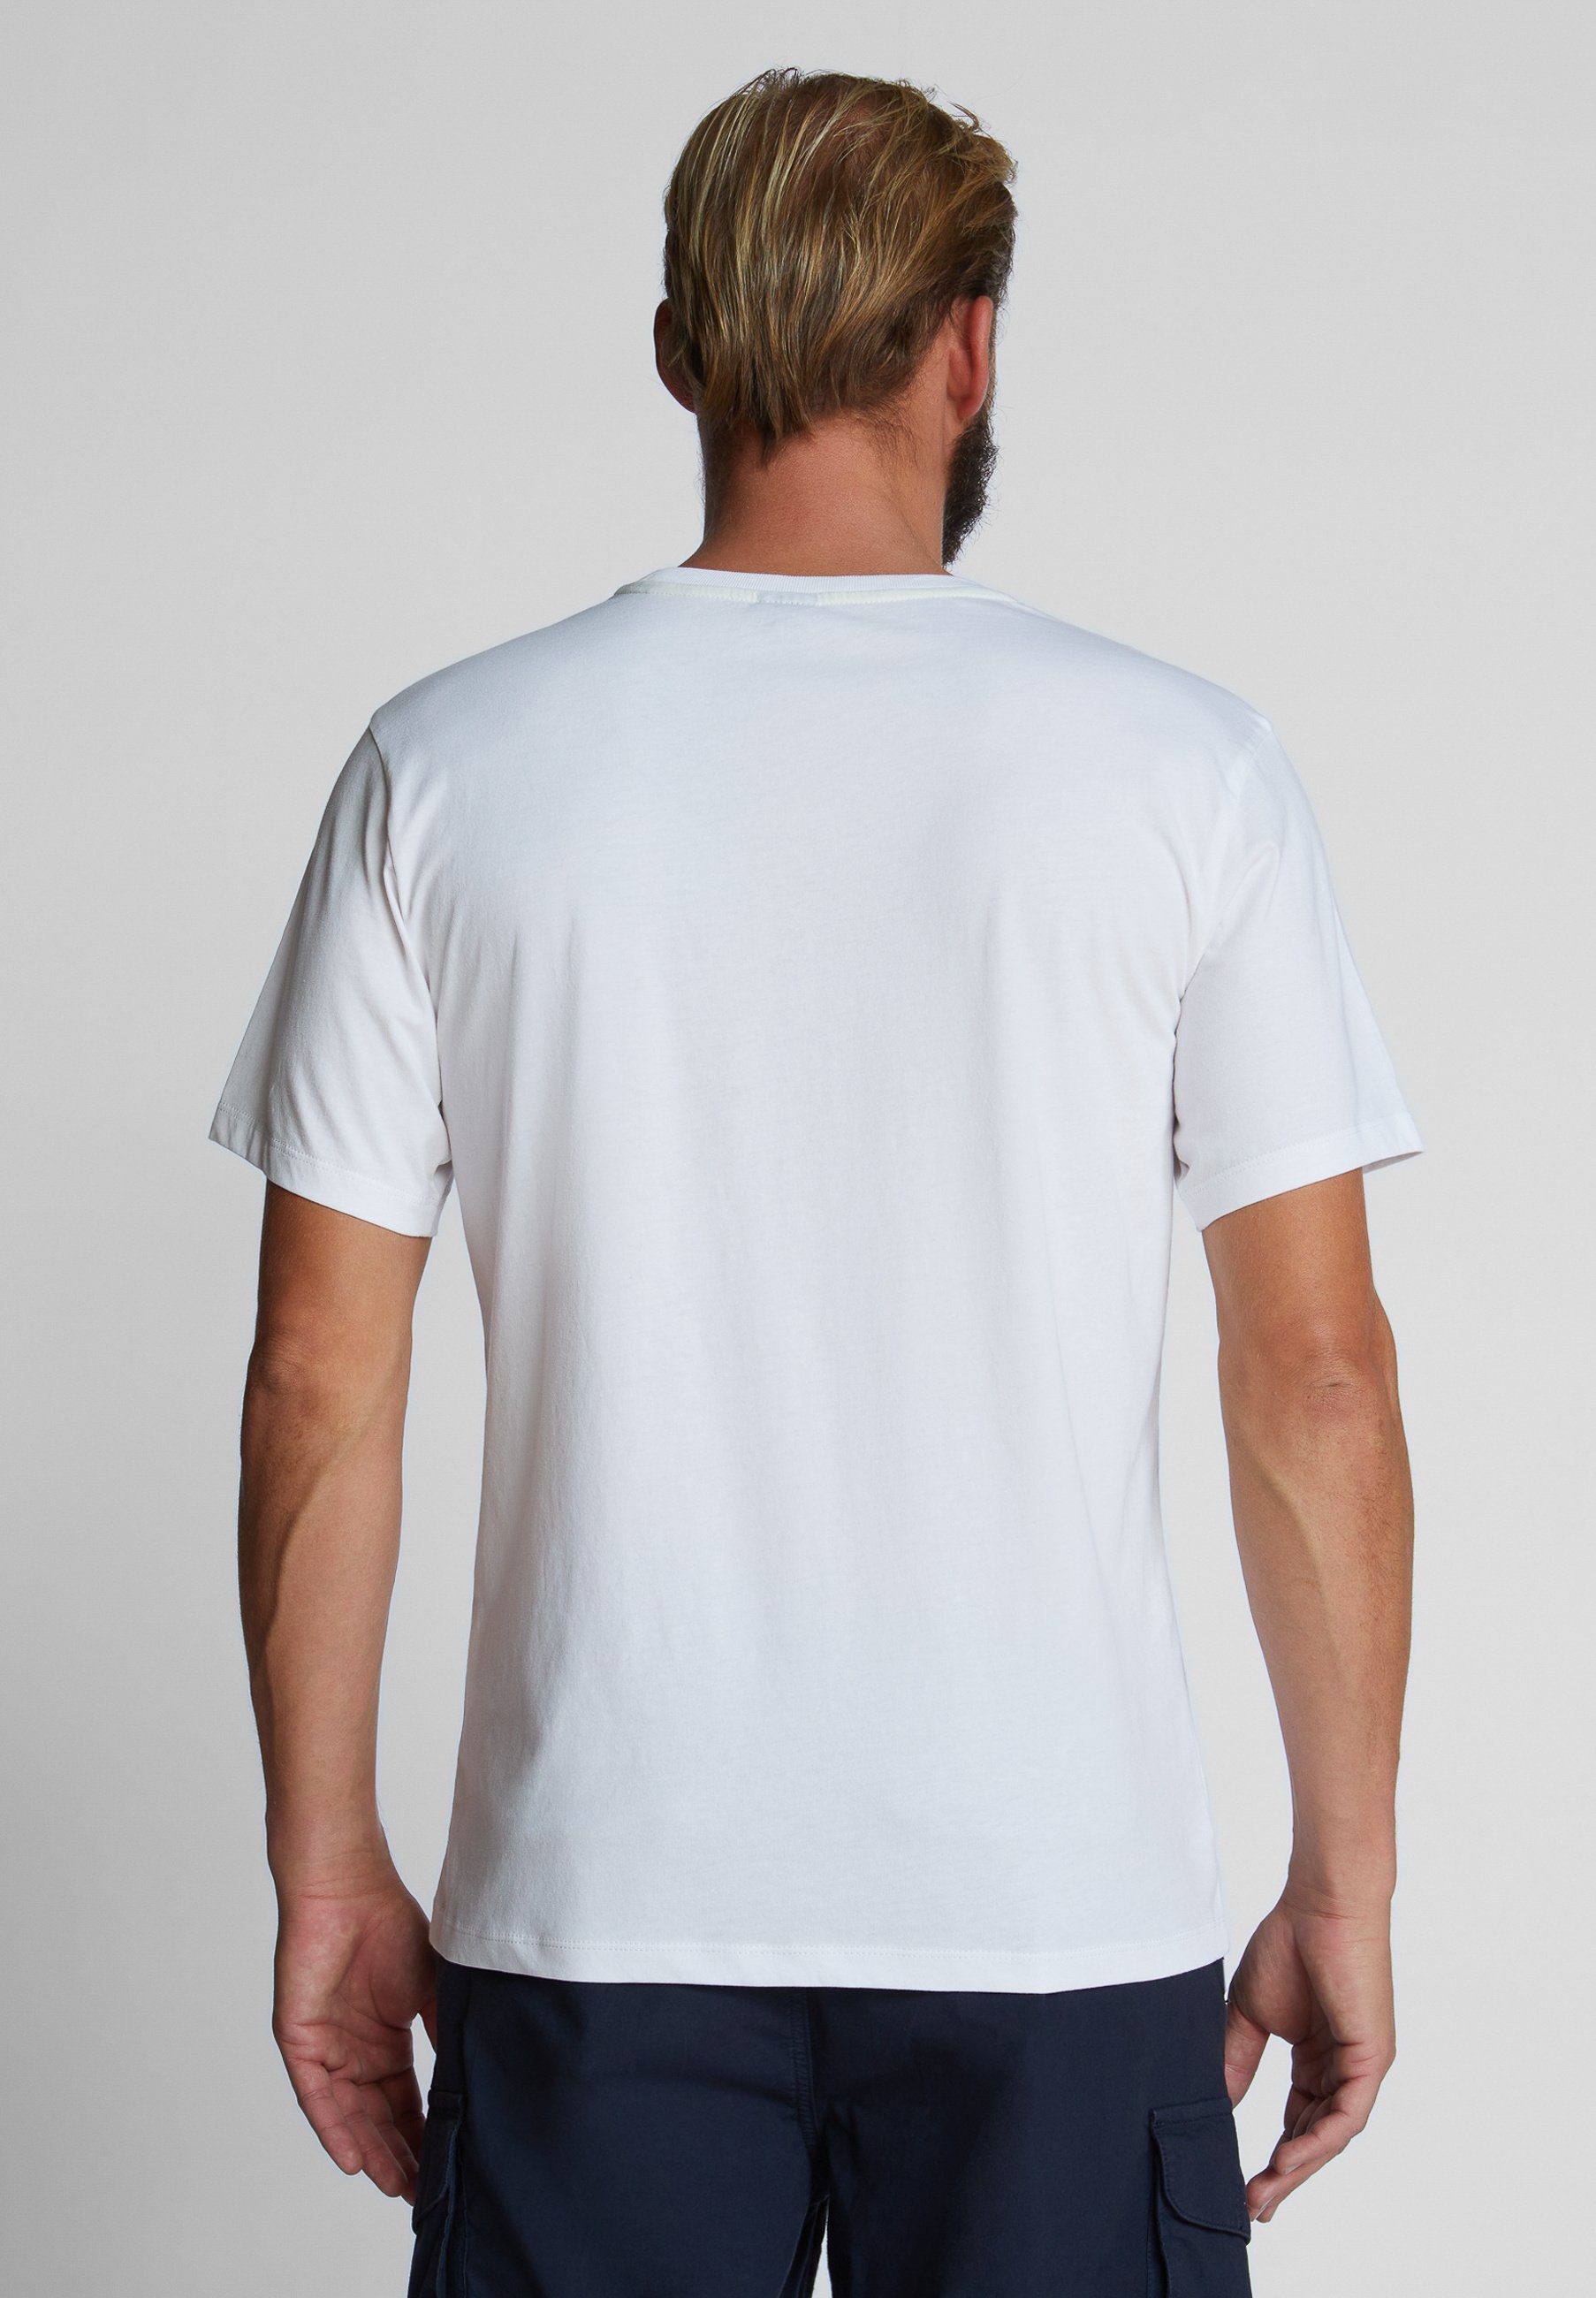 Schriftzug T-Shirt North weiss T-Shirt mit Sails